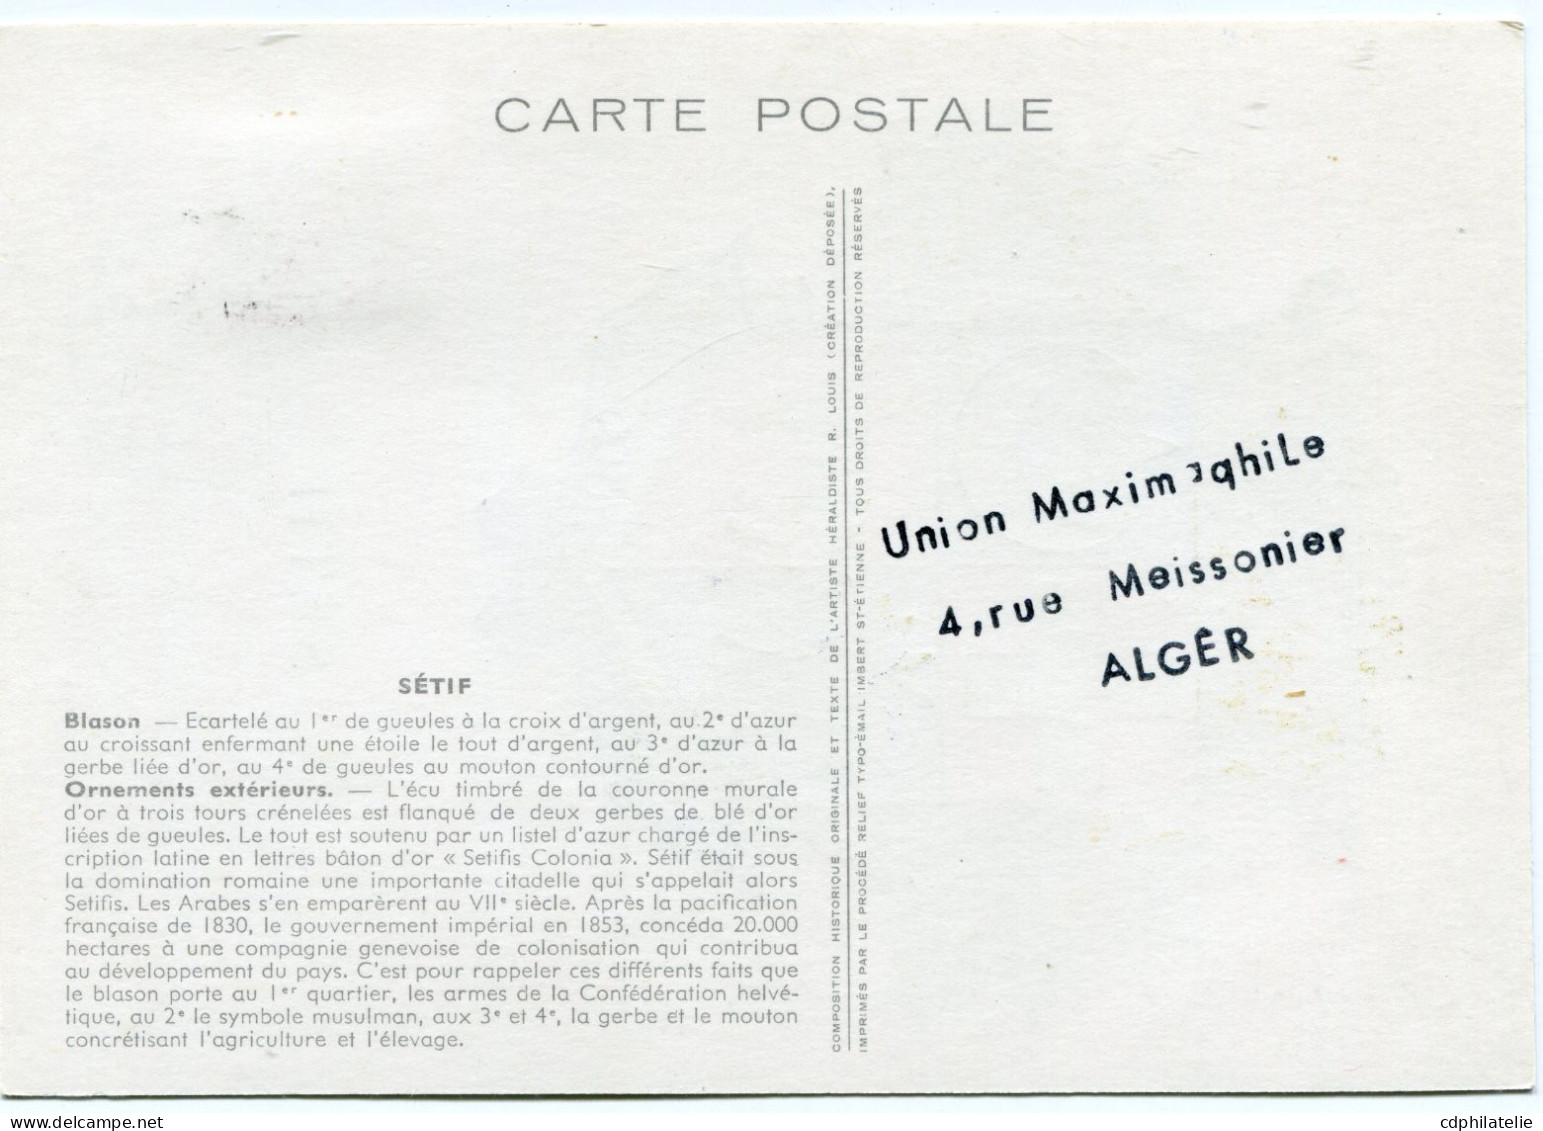 ALGERIE CARTE MAXIMUM DU N°337E ARMOIRIES DE LA VILLE DE SETIF AVEC OBLITERATION SETIF 24-5-1958 CONSTANTINE - Cartes-maximum